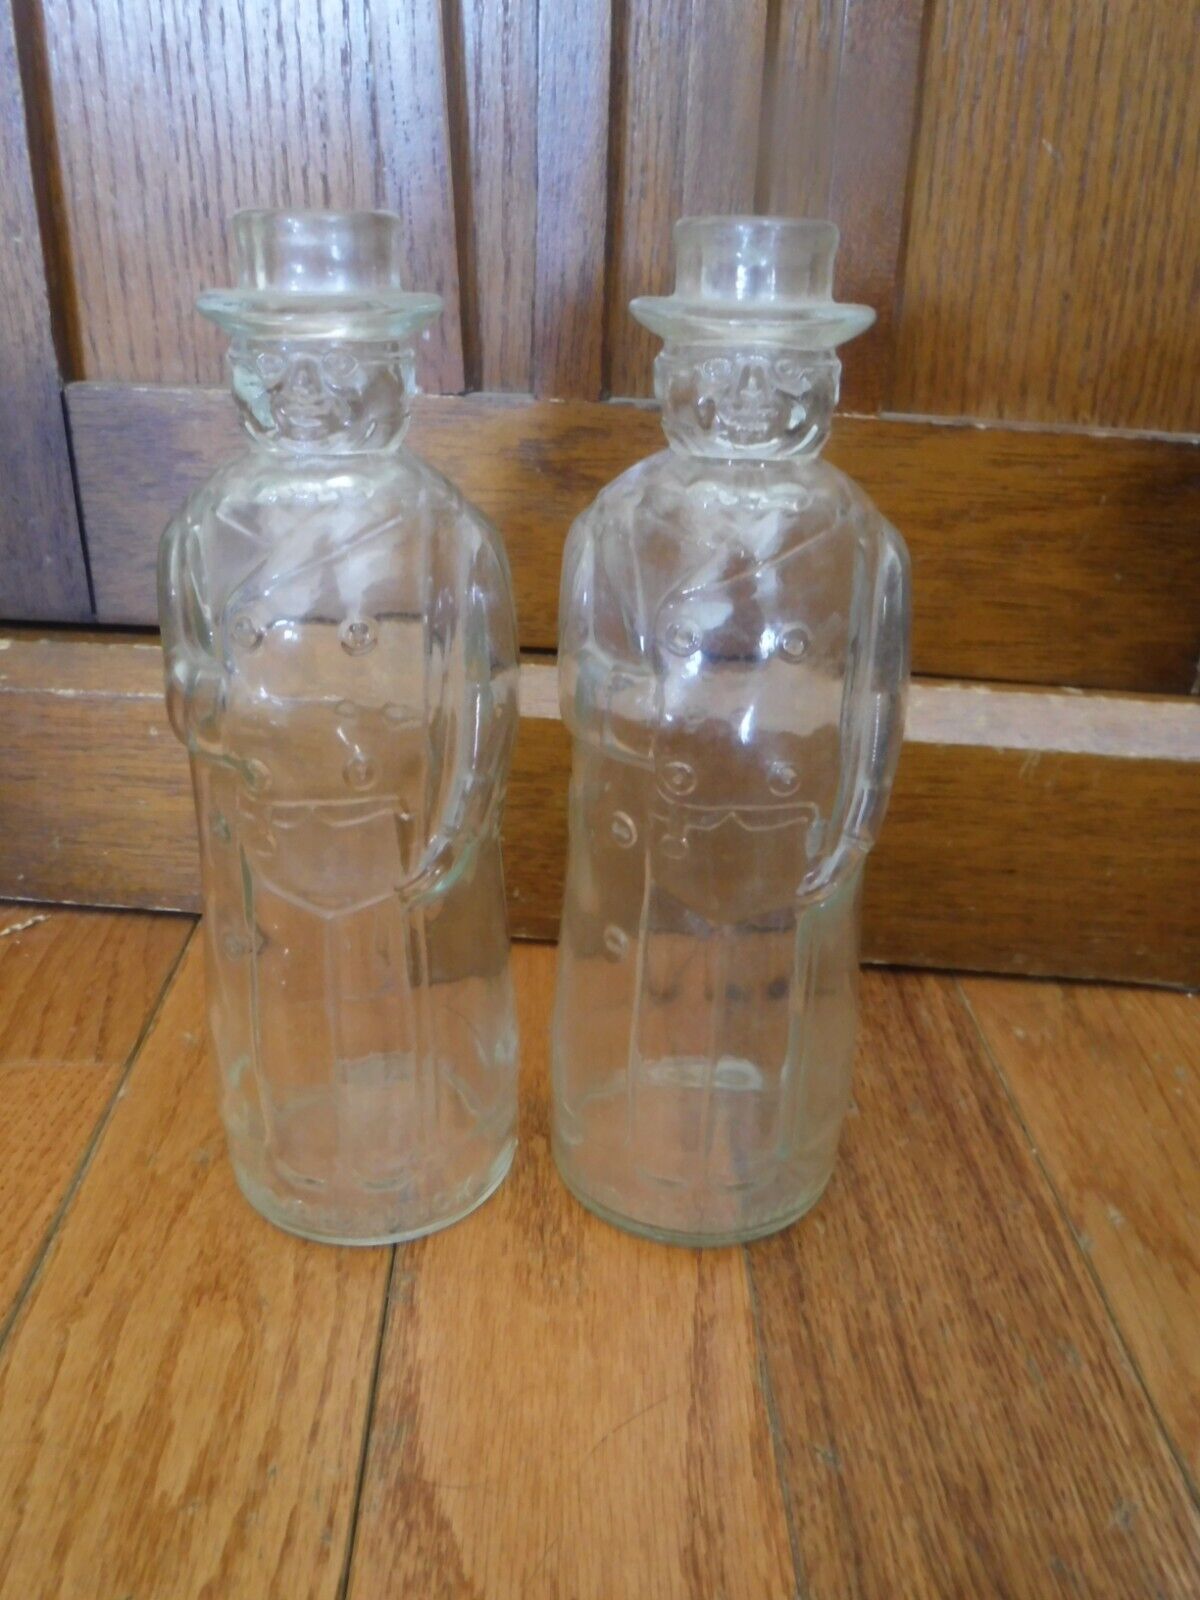 2 Vintage Mr pickwick bottles